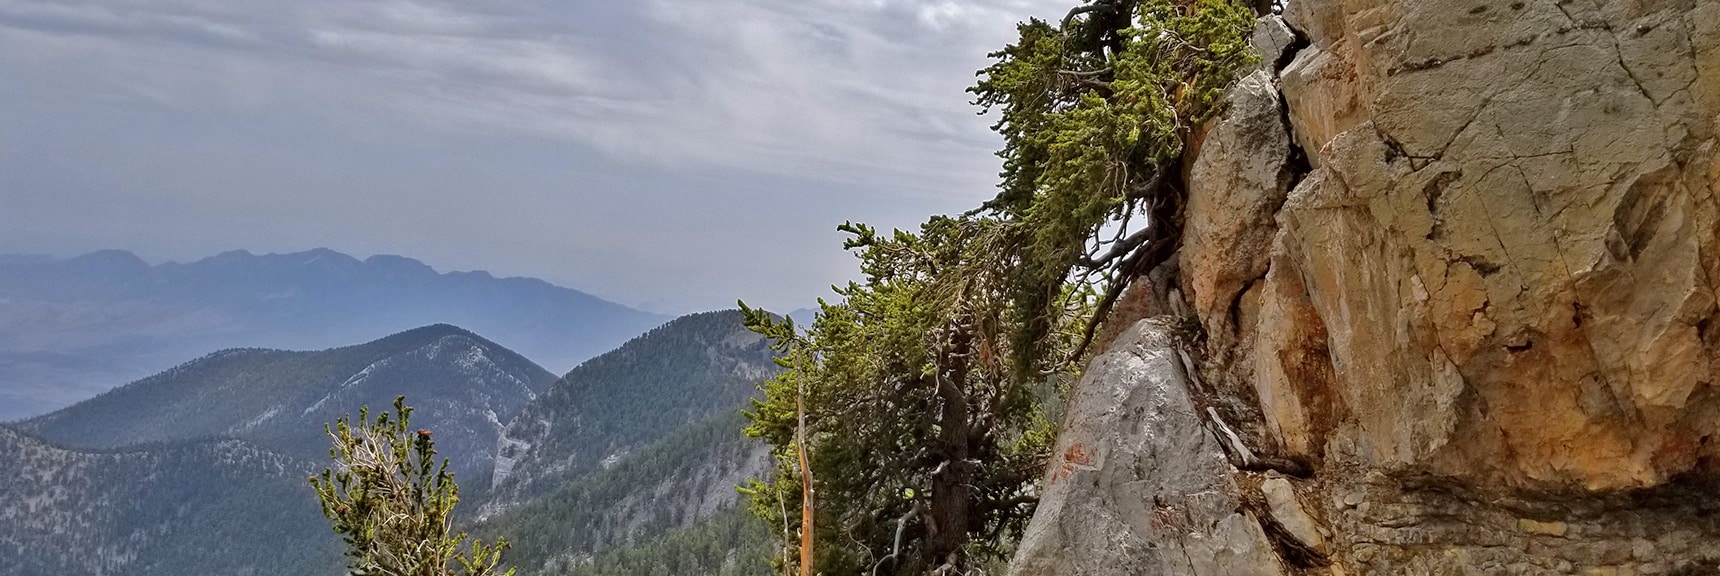 La Madre Mountain & Devil's Slide Faintly In Distance Behind Fletcher Peak | Mummy Mountain NE Cliffs Descent | Mt Charleston Wilderness | Spring Mountains, Nevada